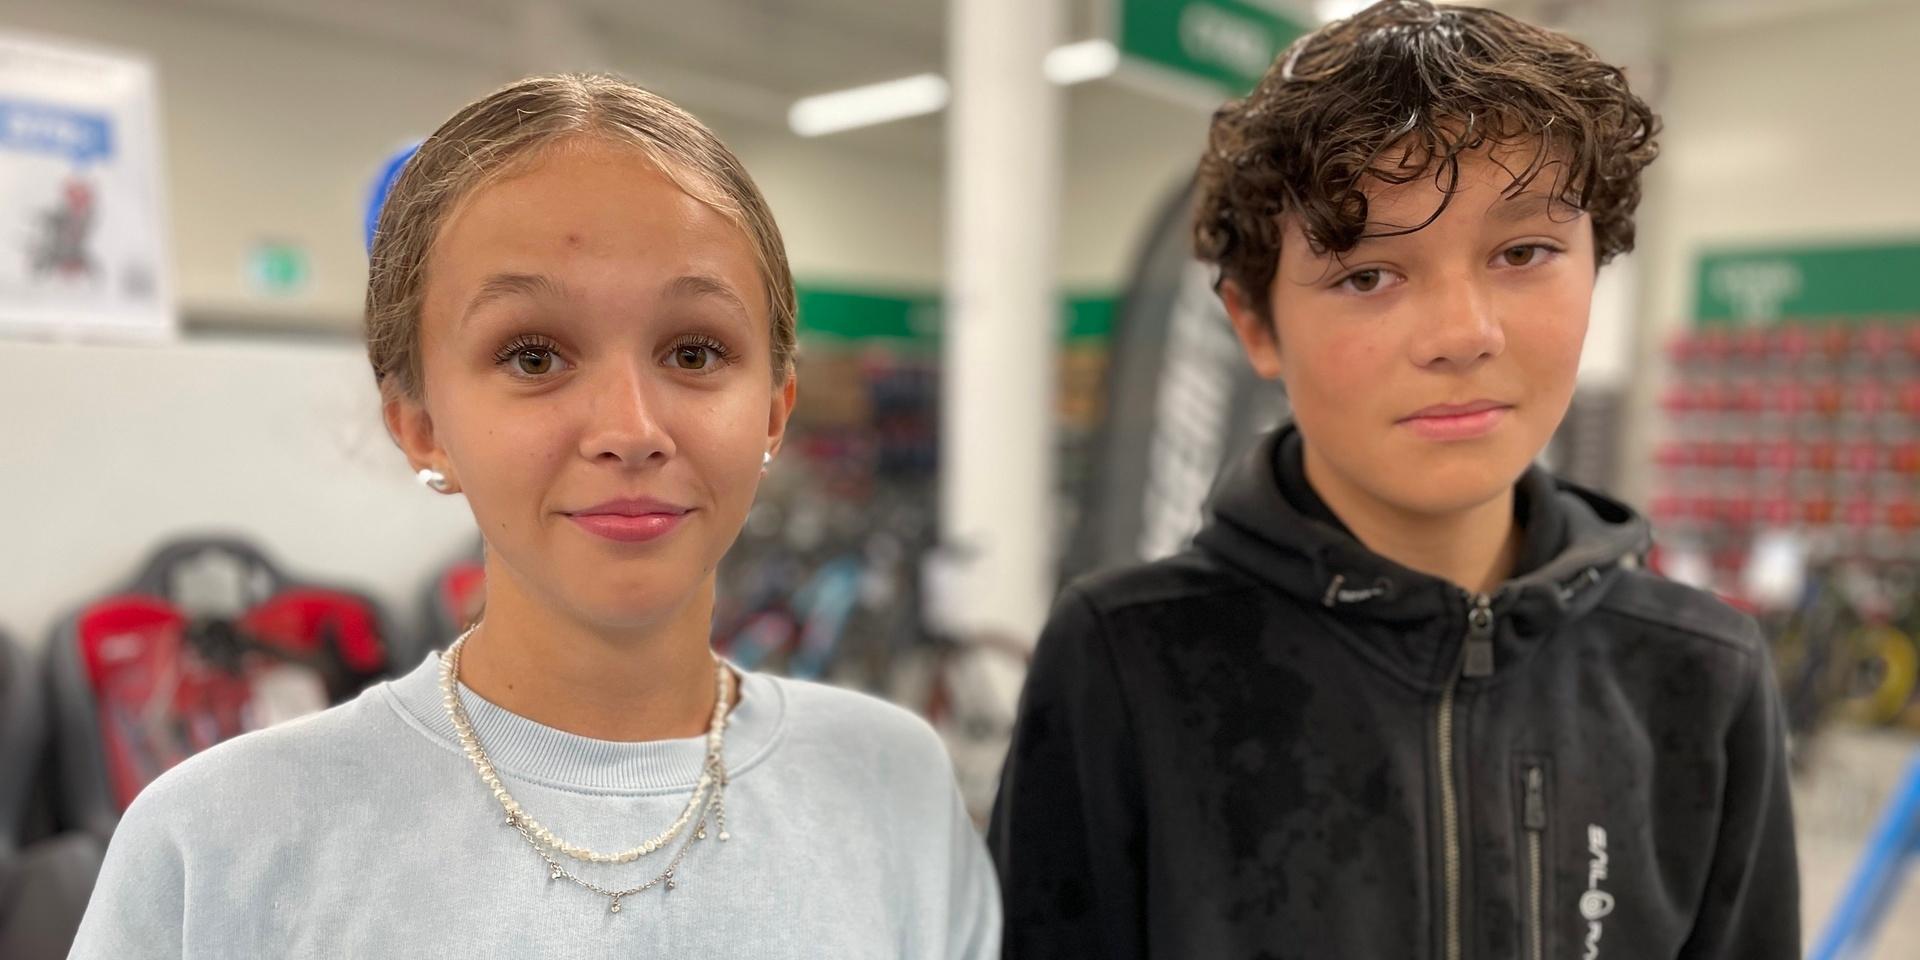 Saga Wennberg och kompisen Vincent Almslätt, 14 år gamla, hänger i butiken med några andra klasskompisar.